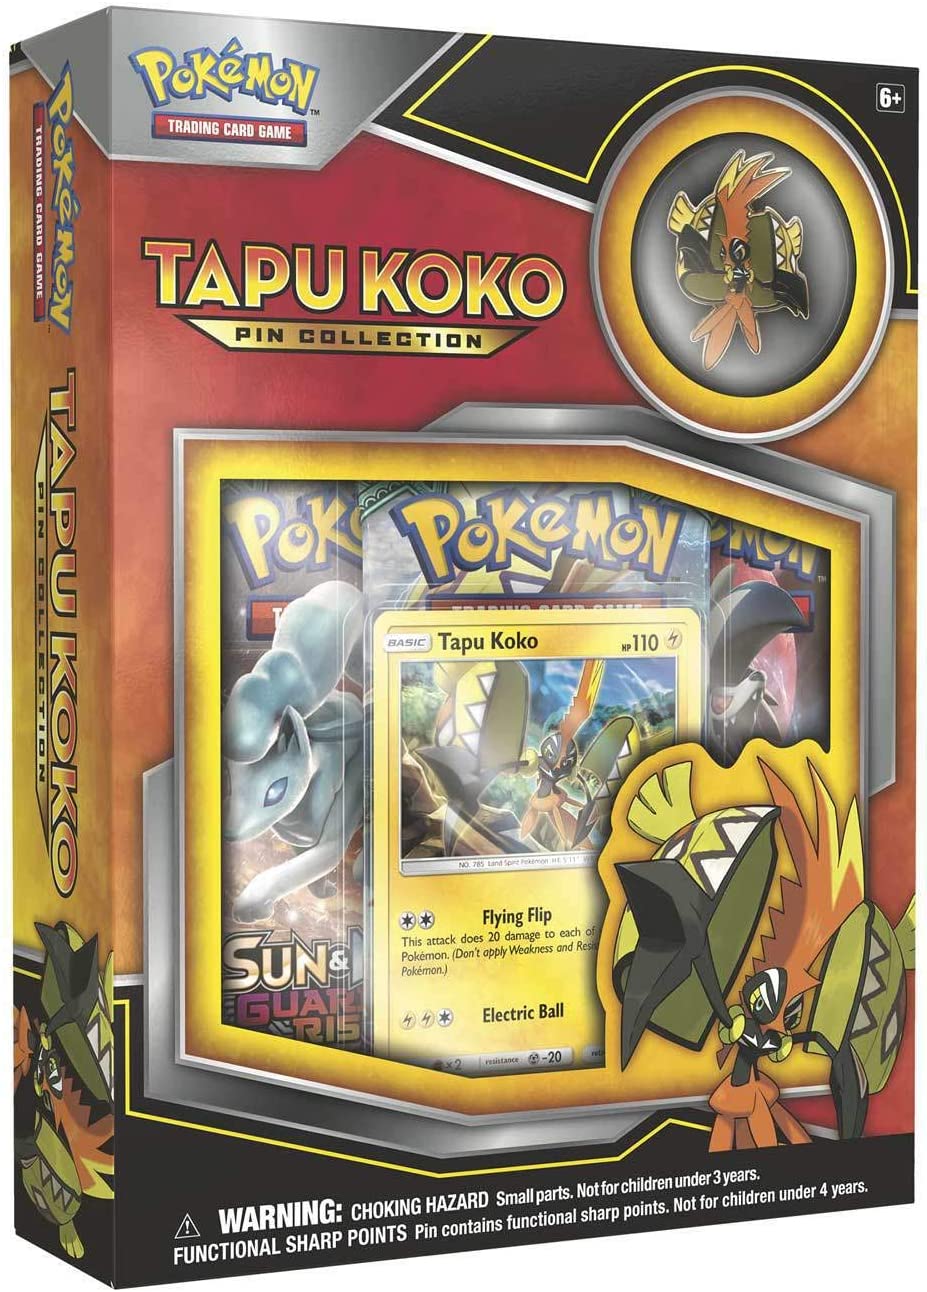 Pokémon TCG Tapu Koko Pin Collection